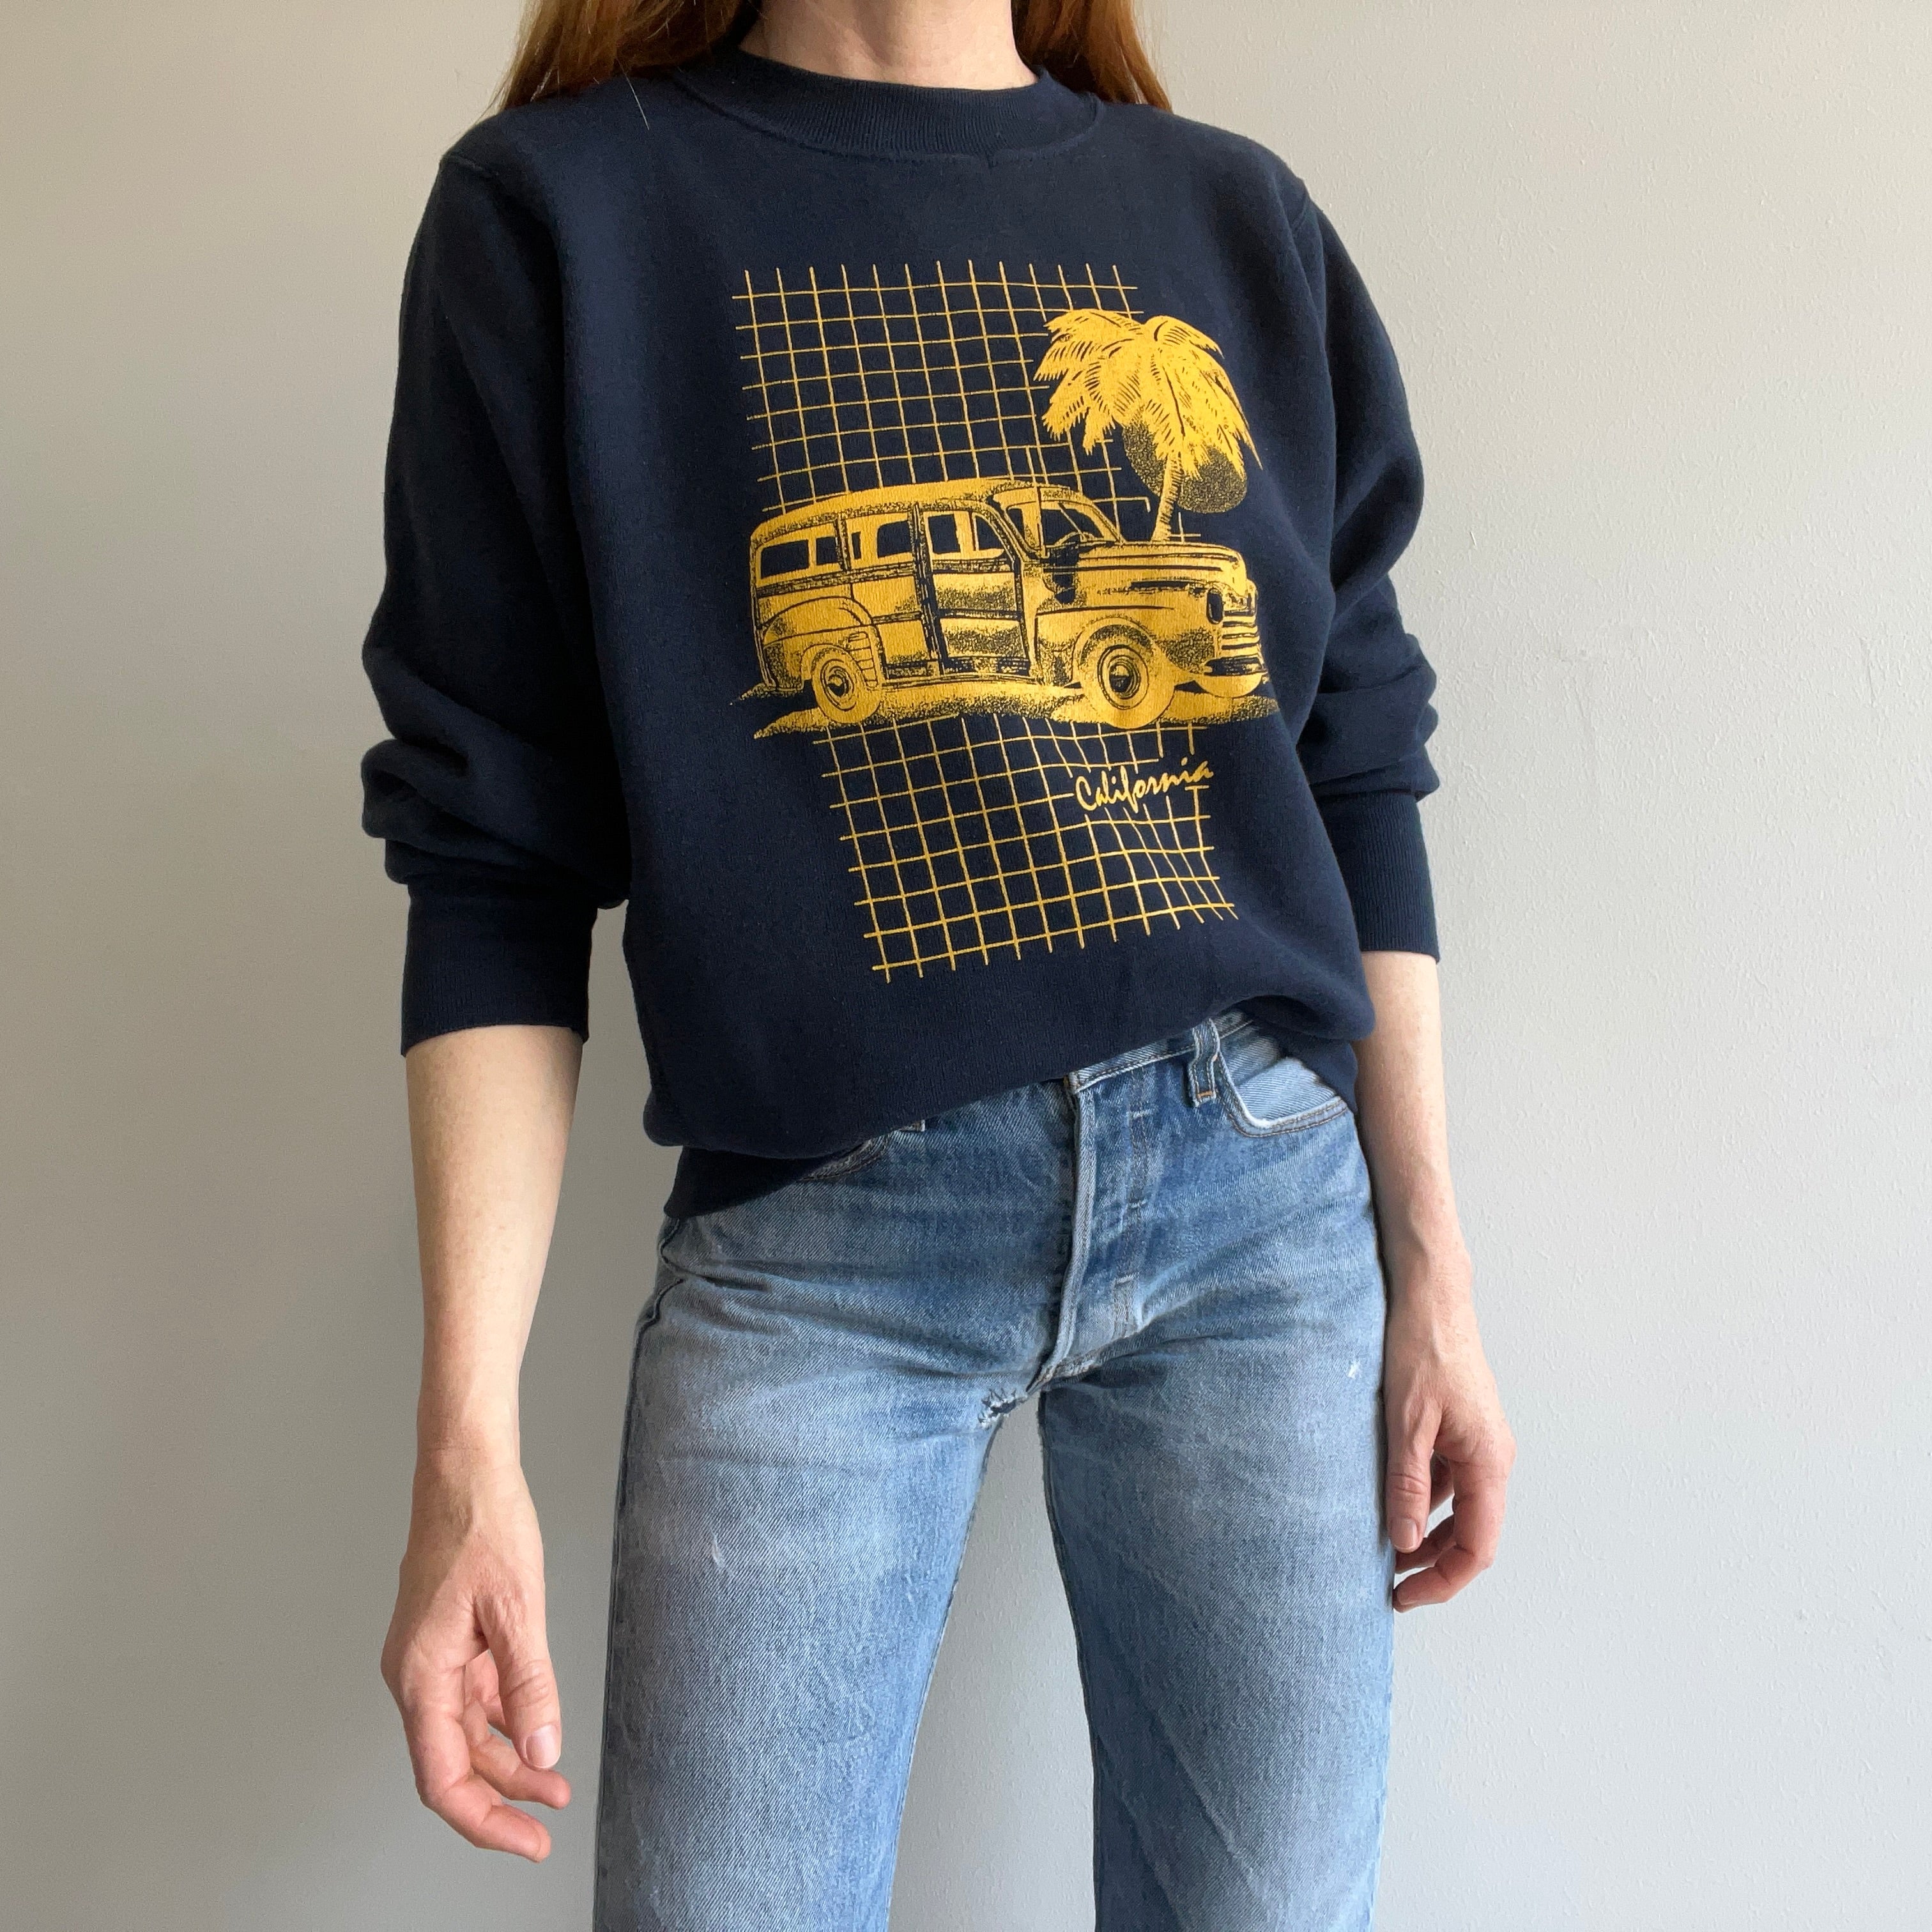 1980s California - Like New - Sweatshirt by Velva Sheen